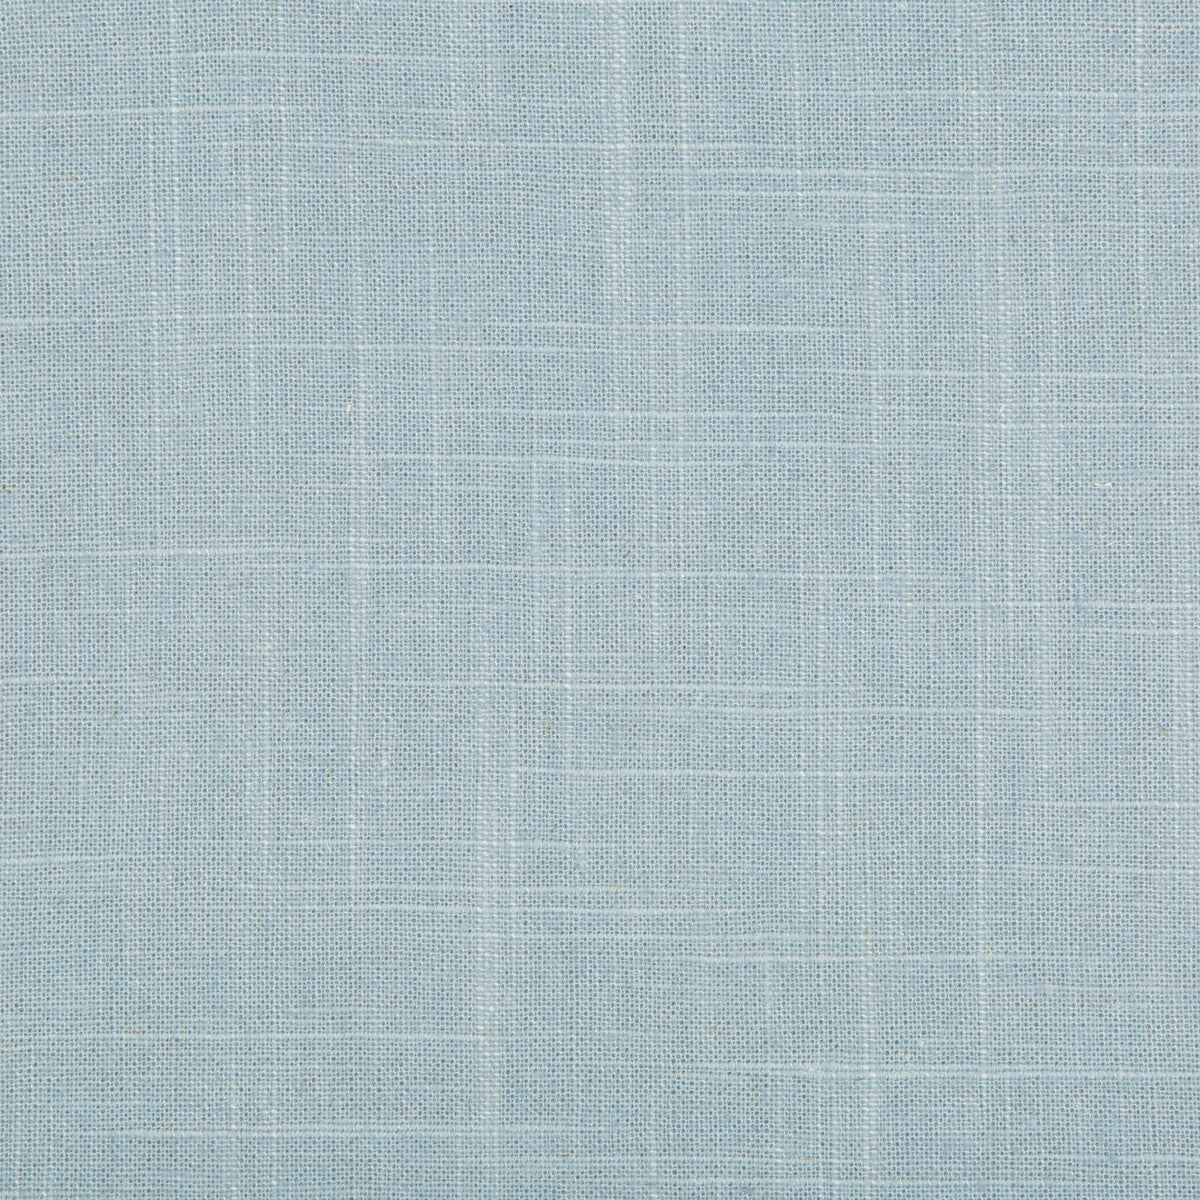 Kravet Basics fabric in 30808-15 color - pattern 30808.15.0 - by Kravet Basics